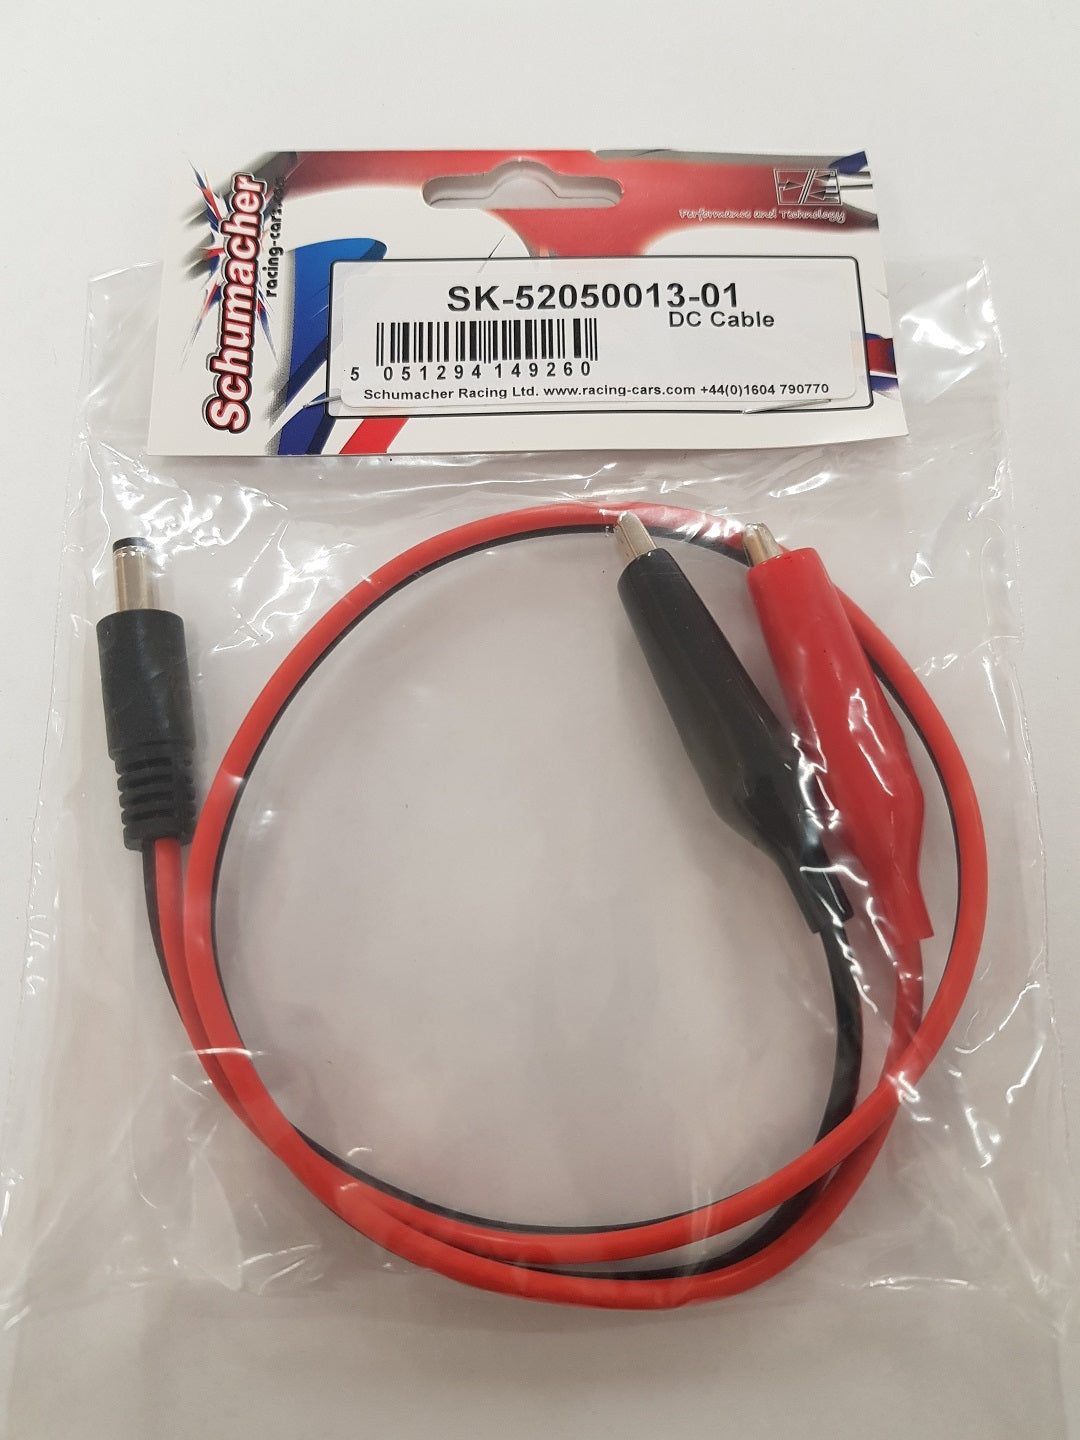 Schumacher DC Cable SK-52050013-01